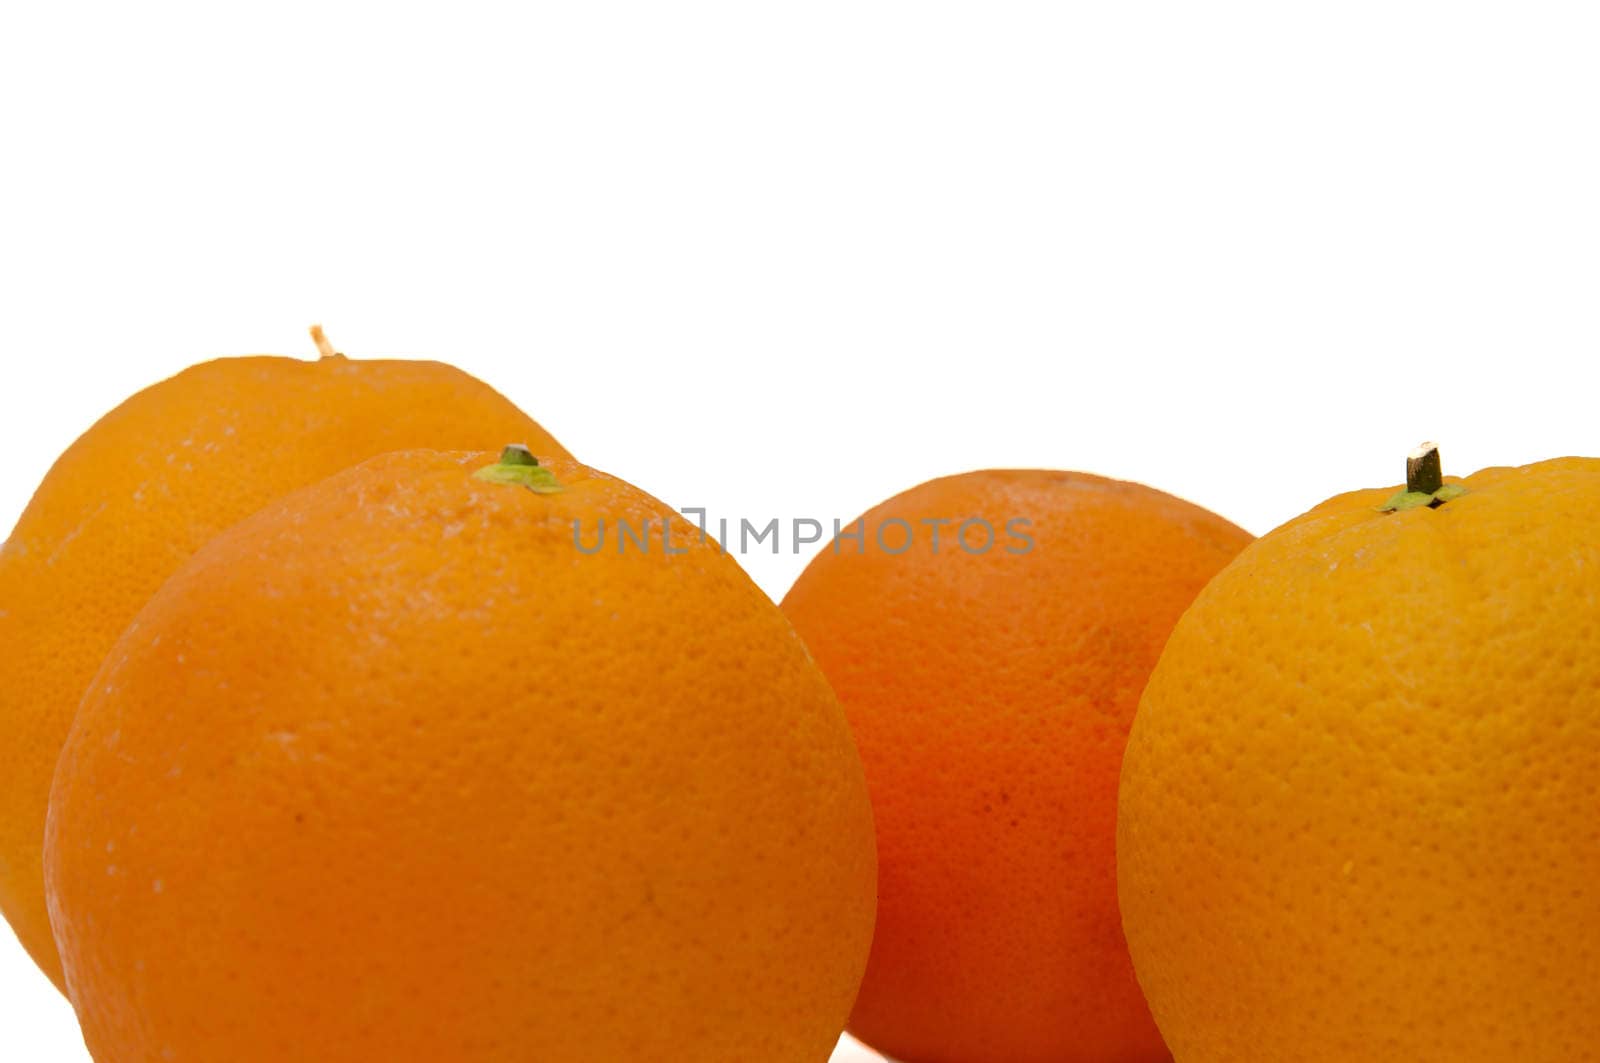 sweet oranges by arnau2098